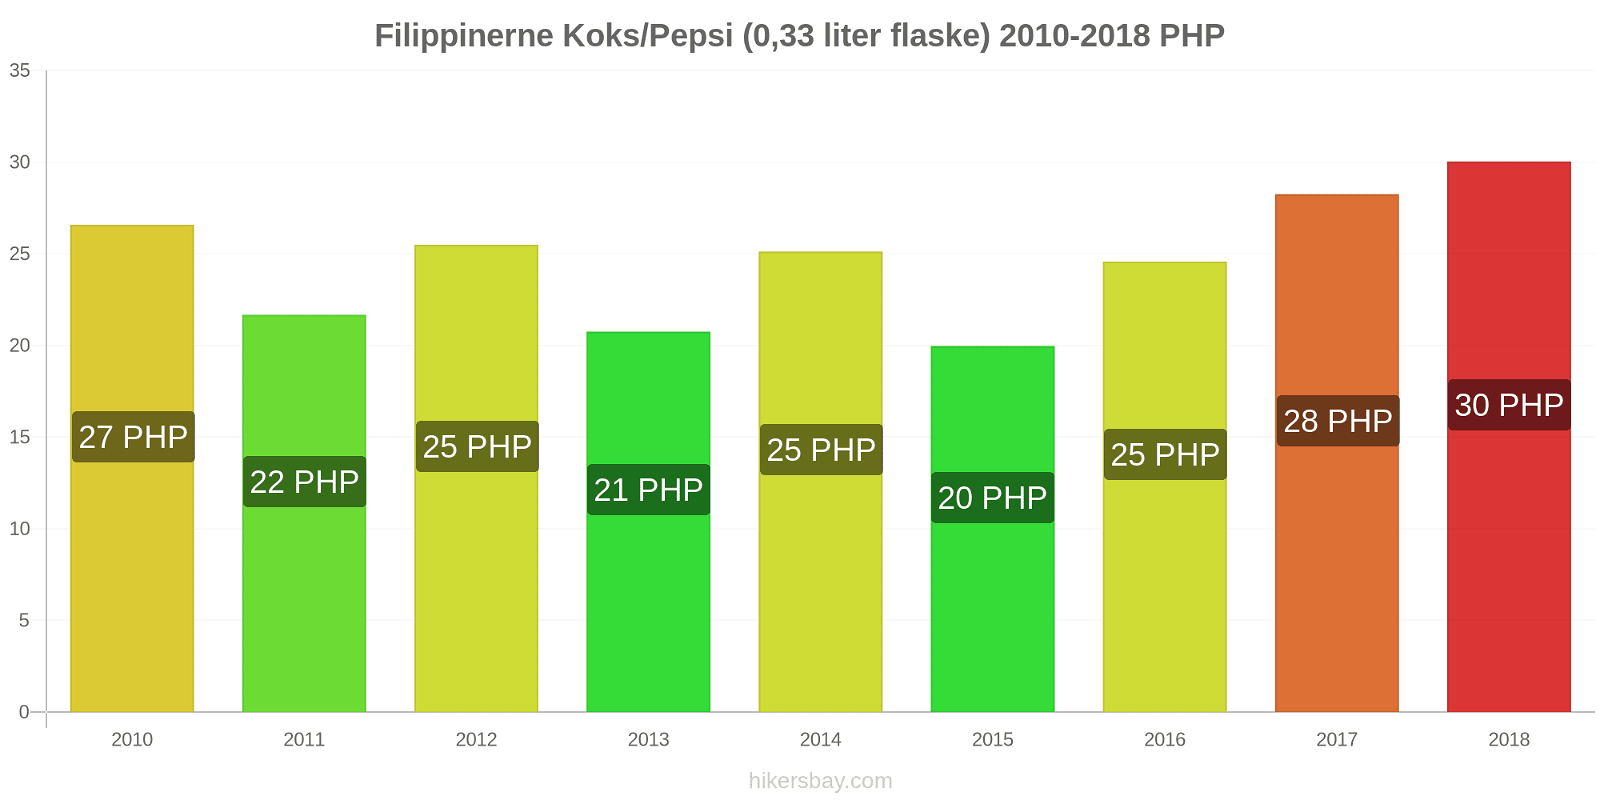 Filippinerne prisændringer Coca-Cola/Pepsi (0.33 liter flaske) hikersbay.com